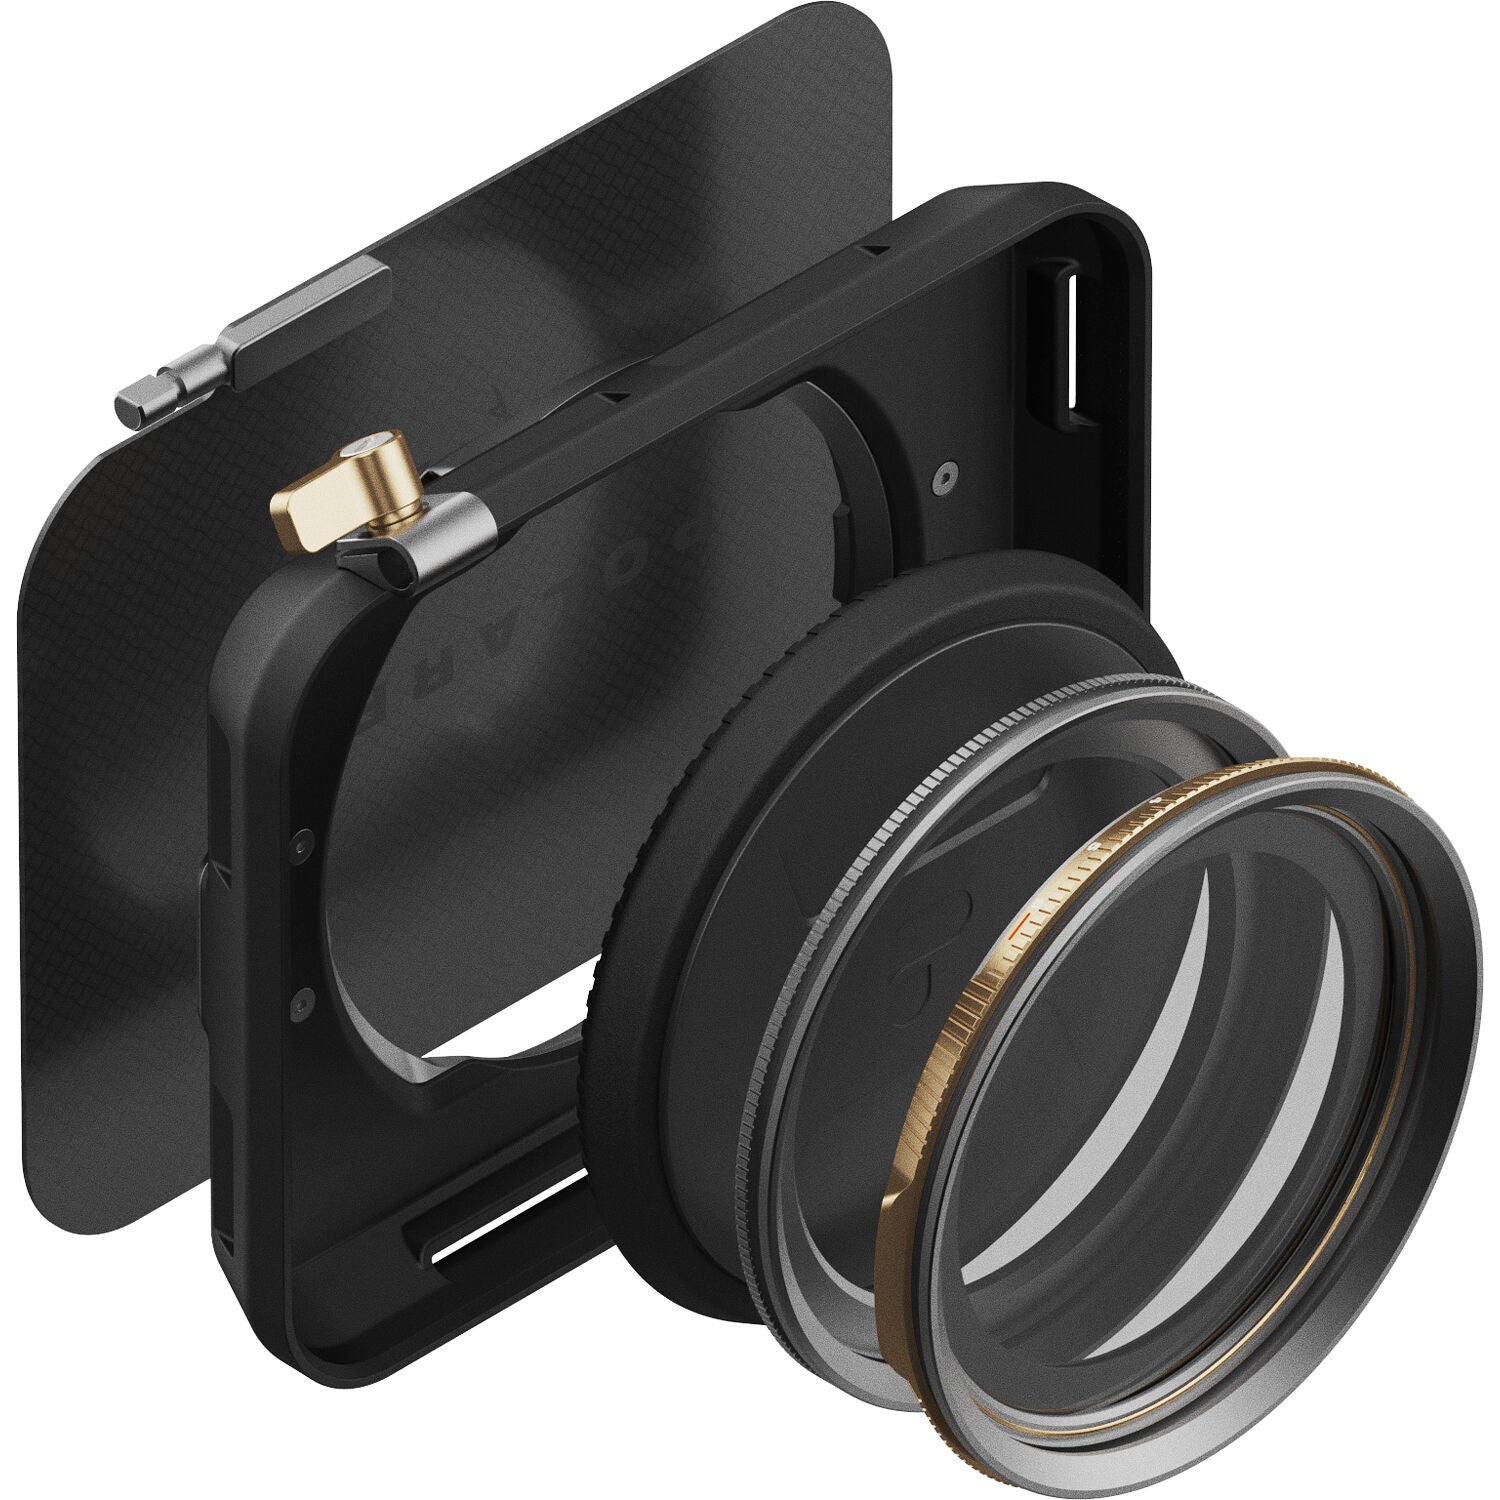 PolarPro Lens Filters - The Base Kit